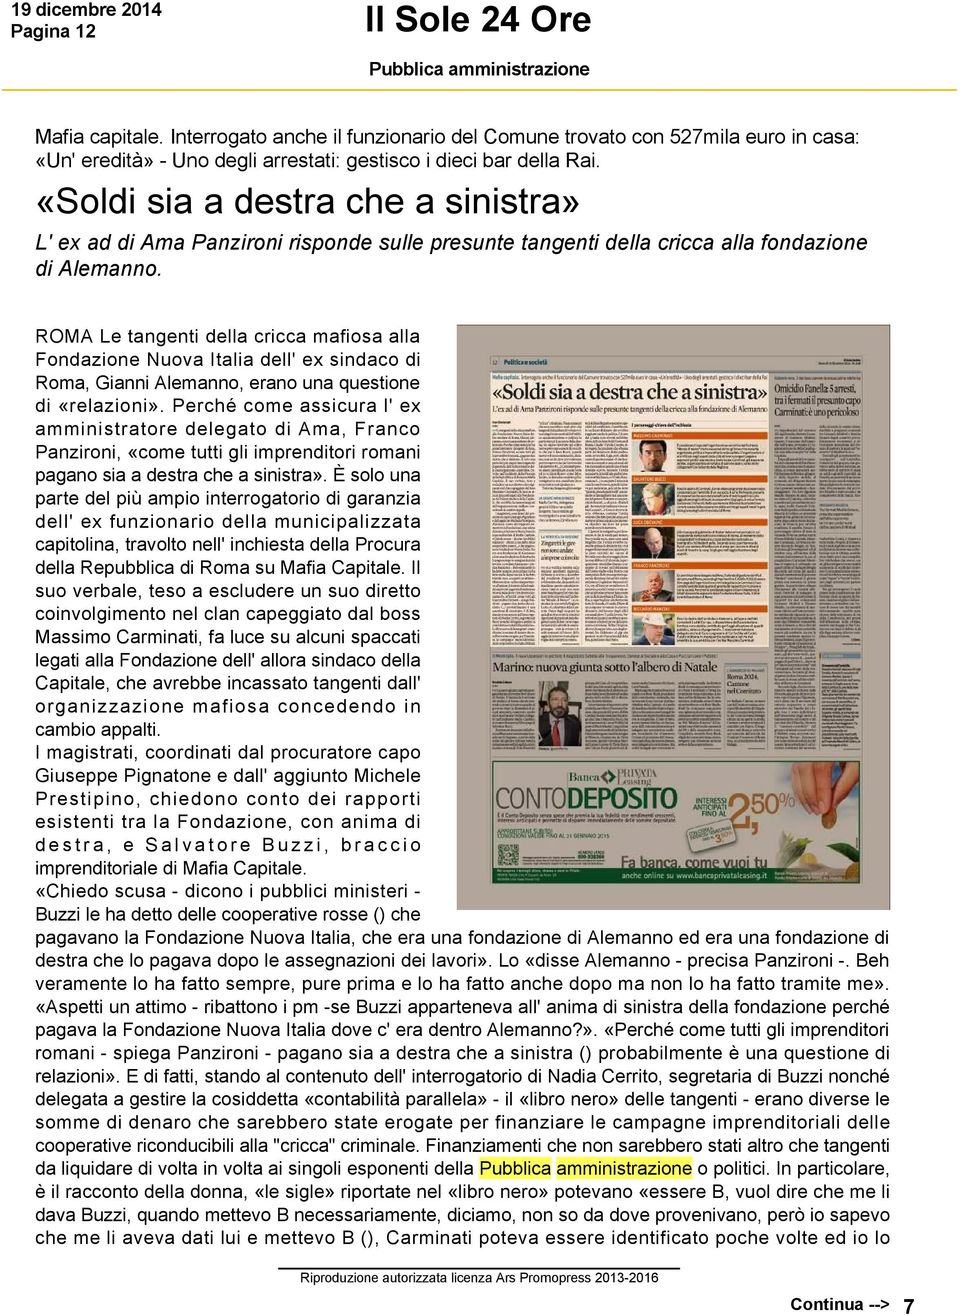 ROMA Le tangenti della cricca mafiosa alla Fondazione Nuova Italia dell' ex sindaco di Roma, Gianni Alemanno, erano una questione di «relazioni».